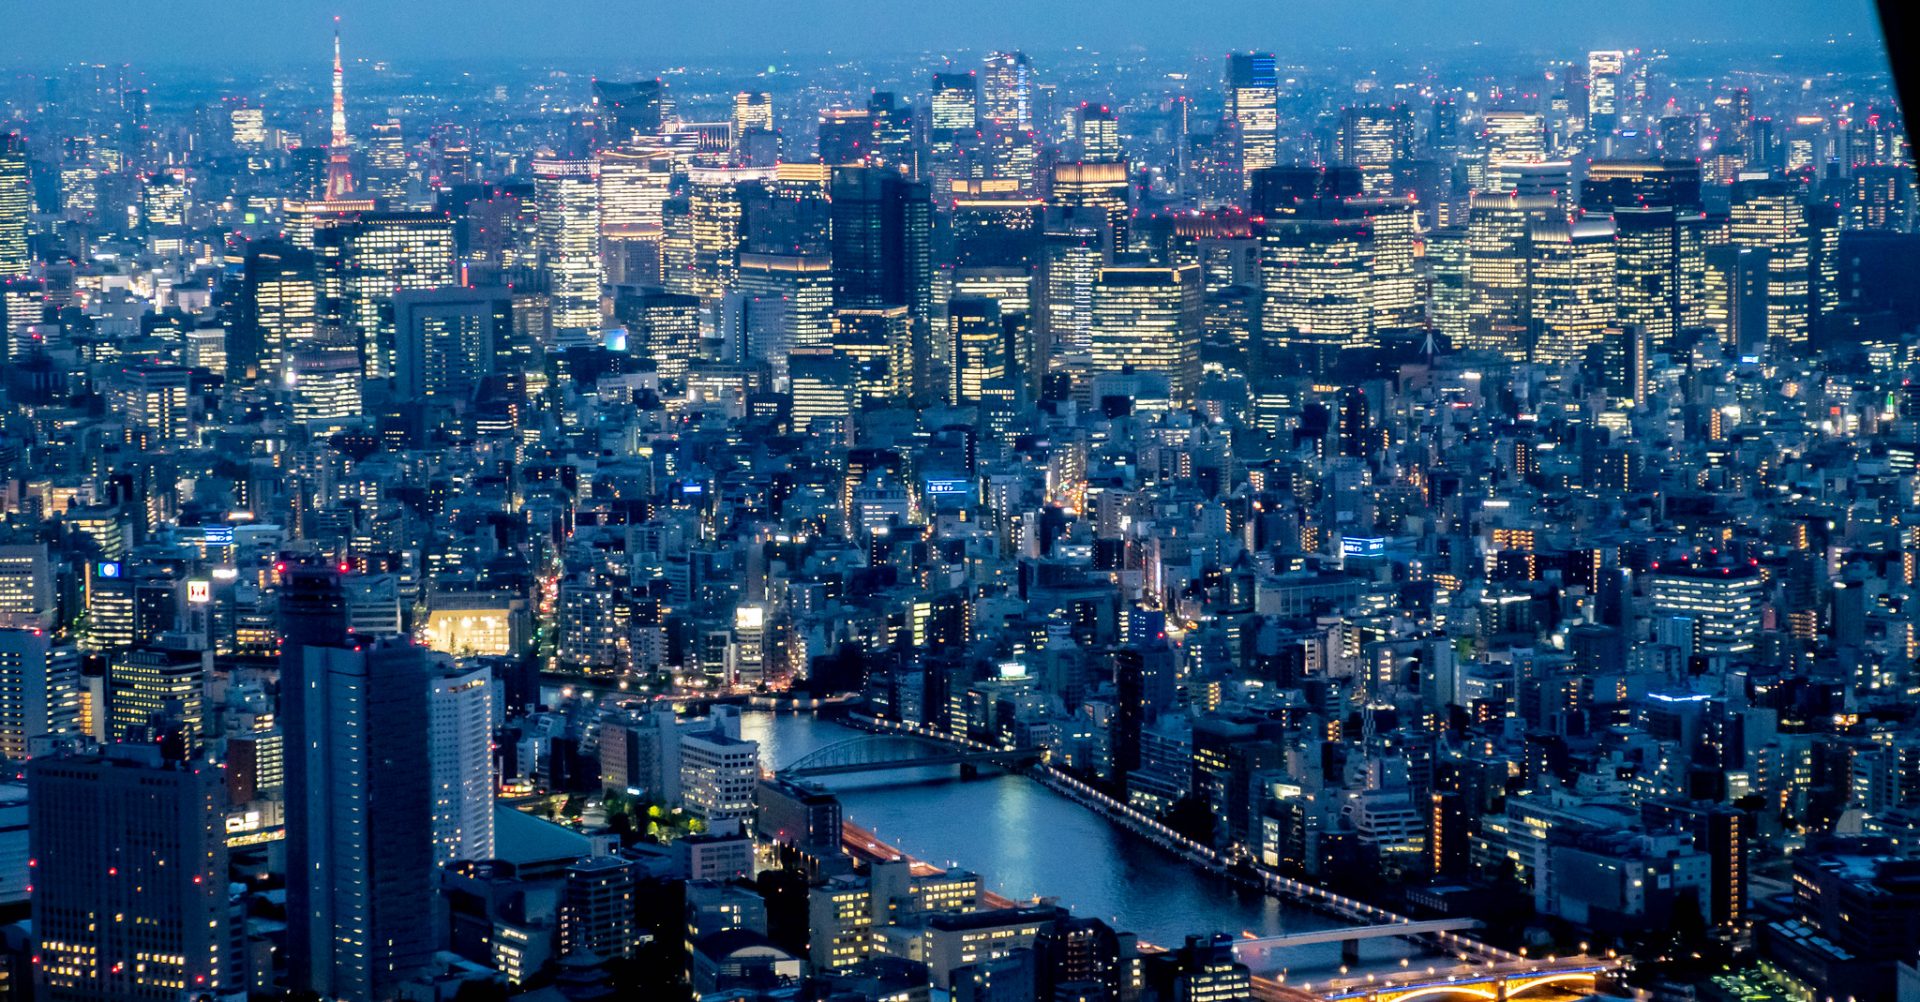 東京の夜景を一望 渋谷最高峰の展望台 #渋谷スカイ #渋谷スクランブルスクエア